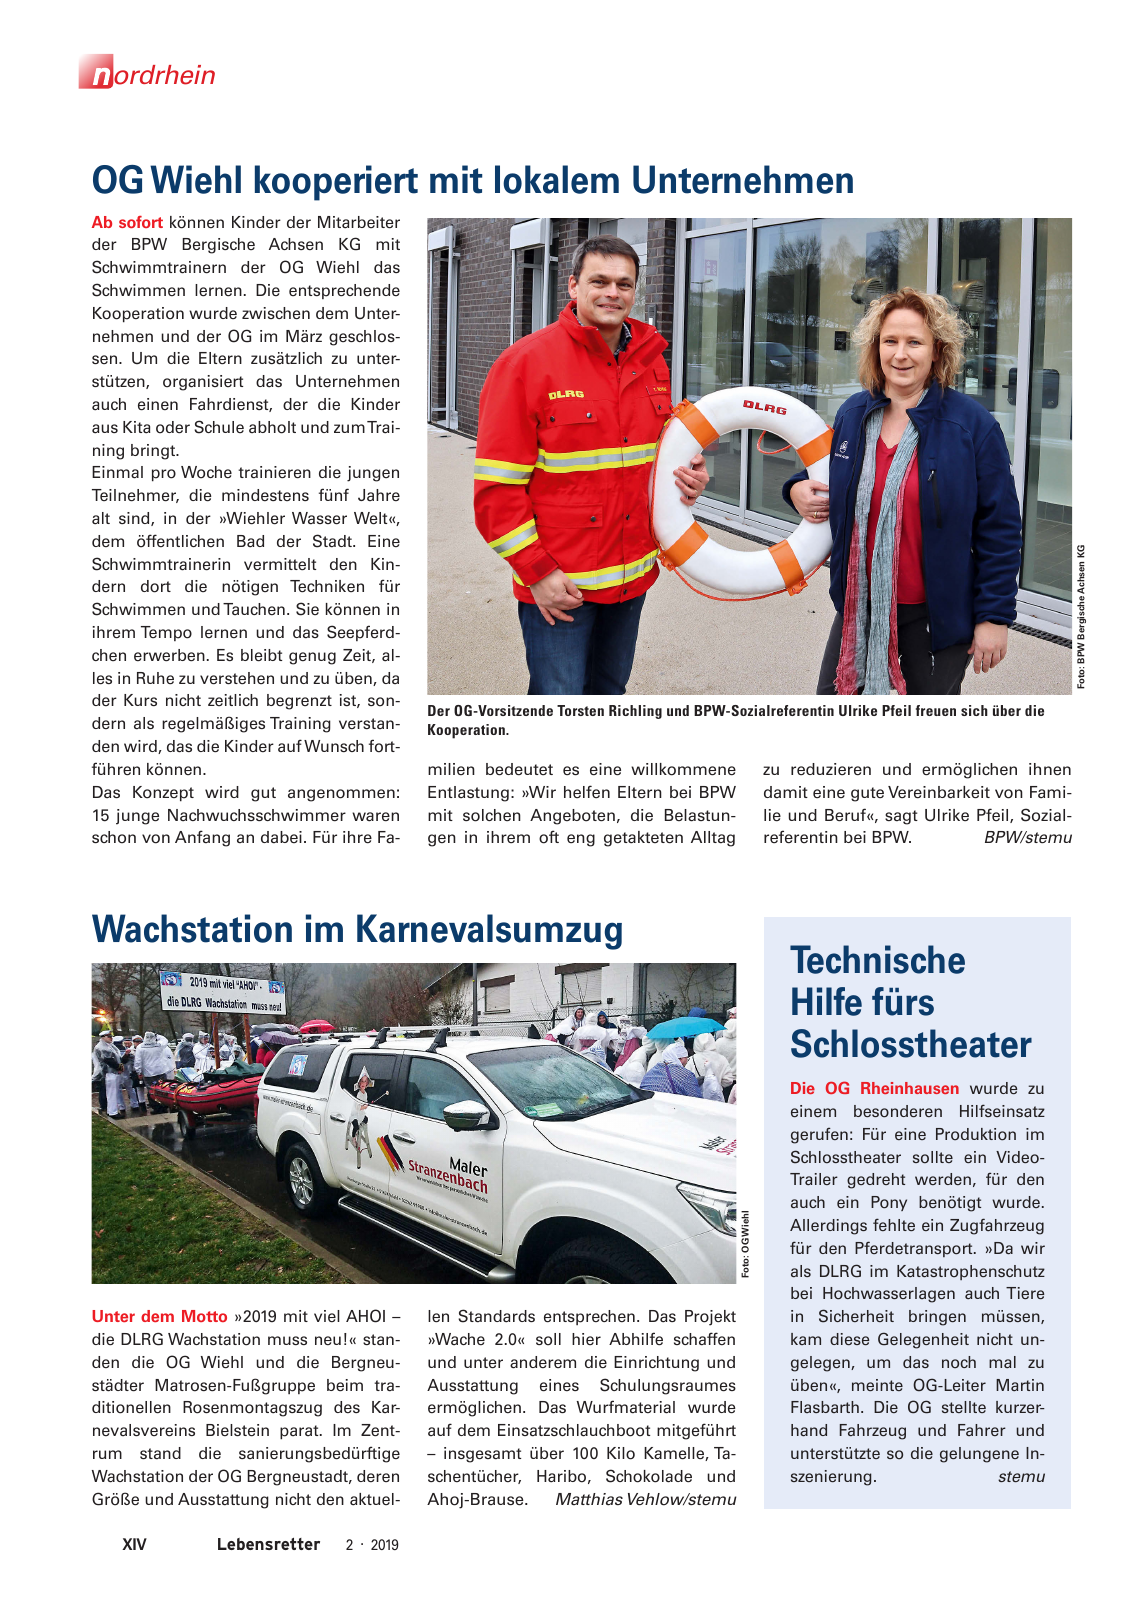 Vorschau Lebensretter 2/2019 - Nordrhein Regionalausgabe Seite 16